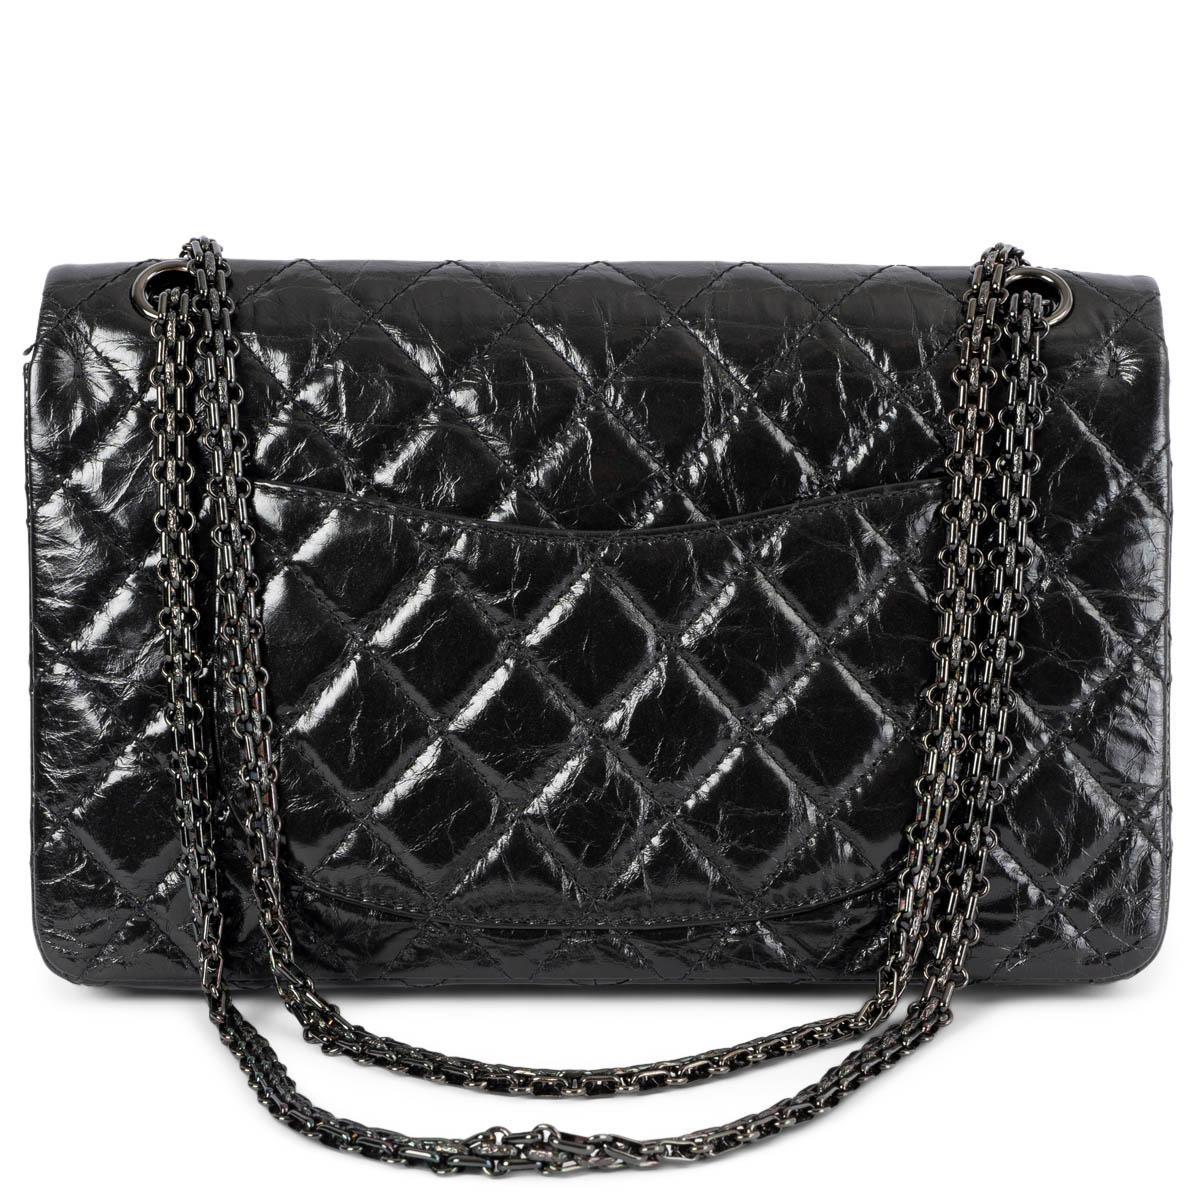 Black CHANEL black quilted aged leather 2.55 LARGE REISSUE 226 Shoulder Bag